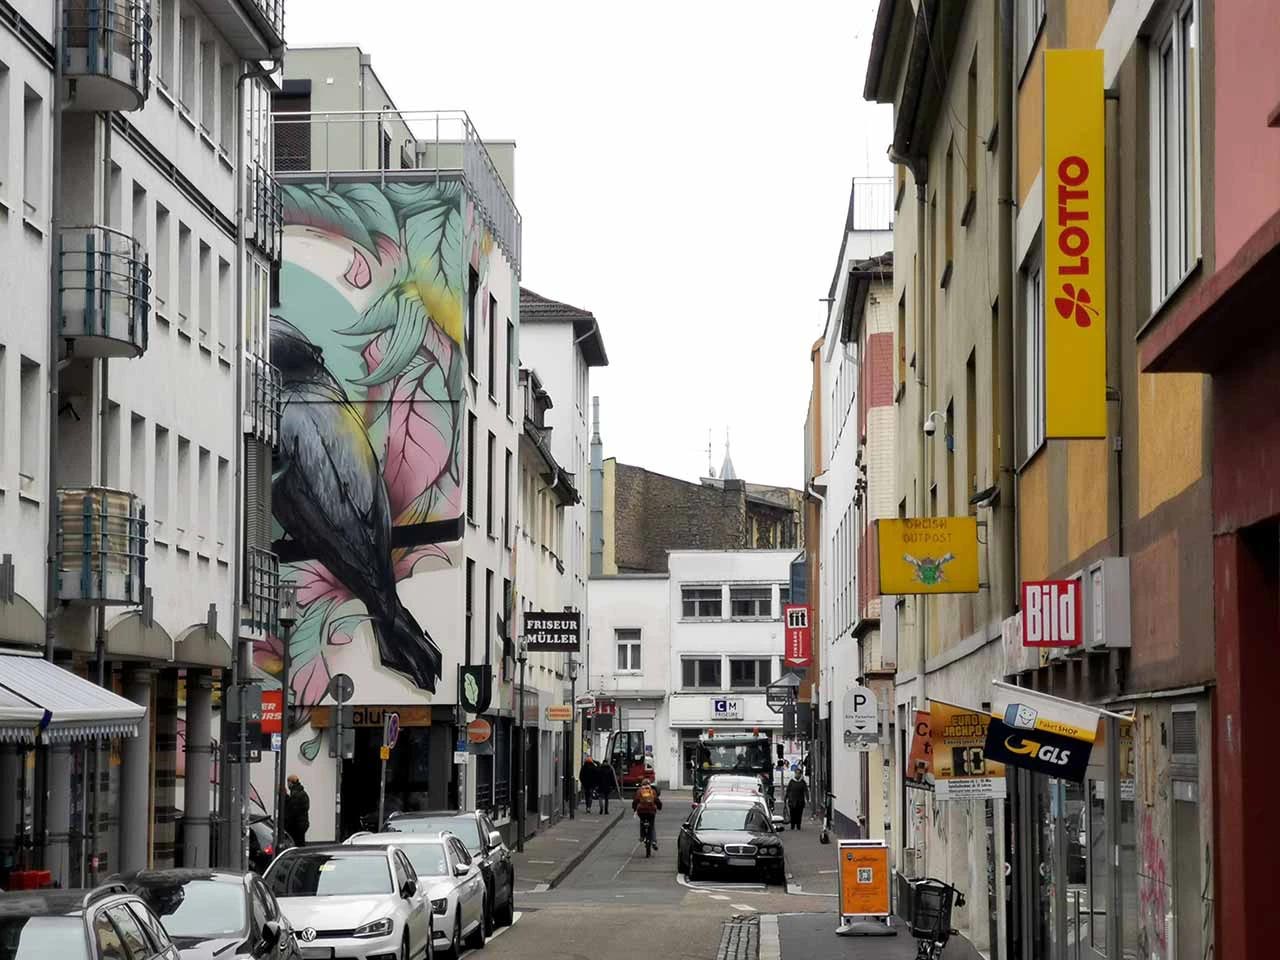 Bleichenvogel in Mainz by studio lacks